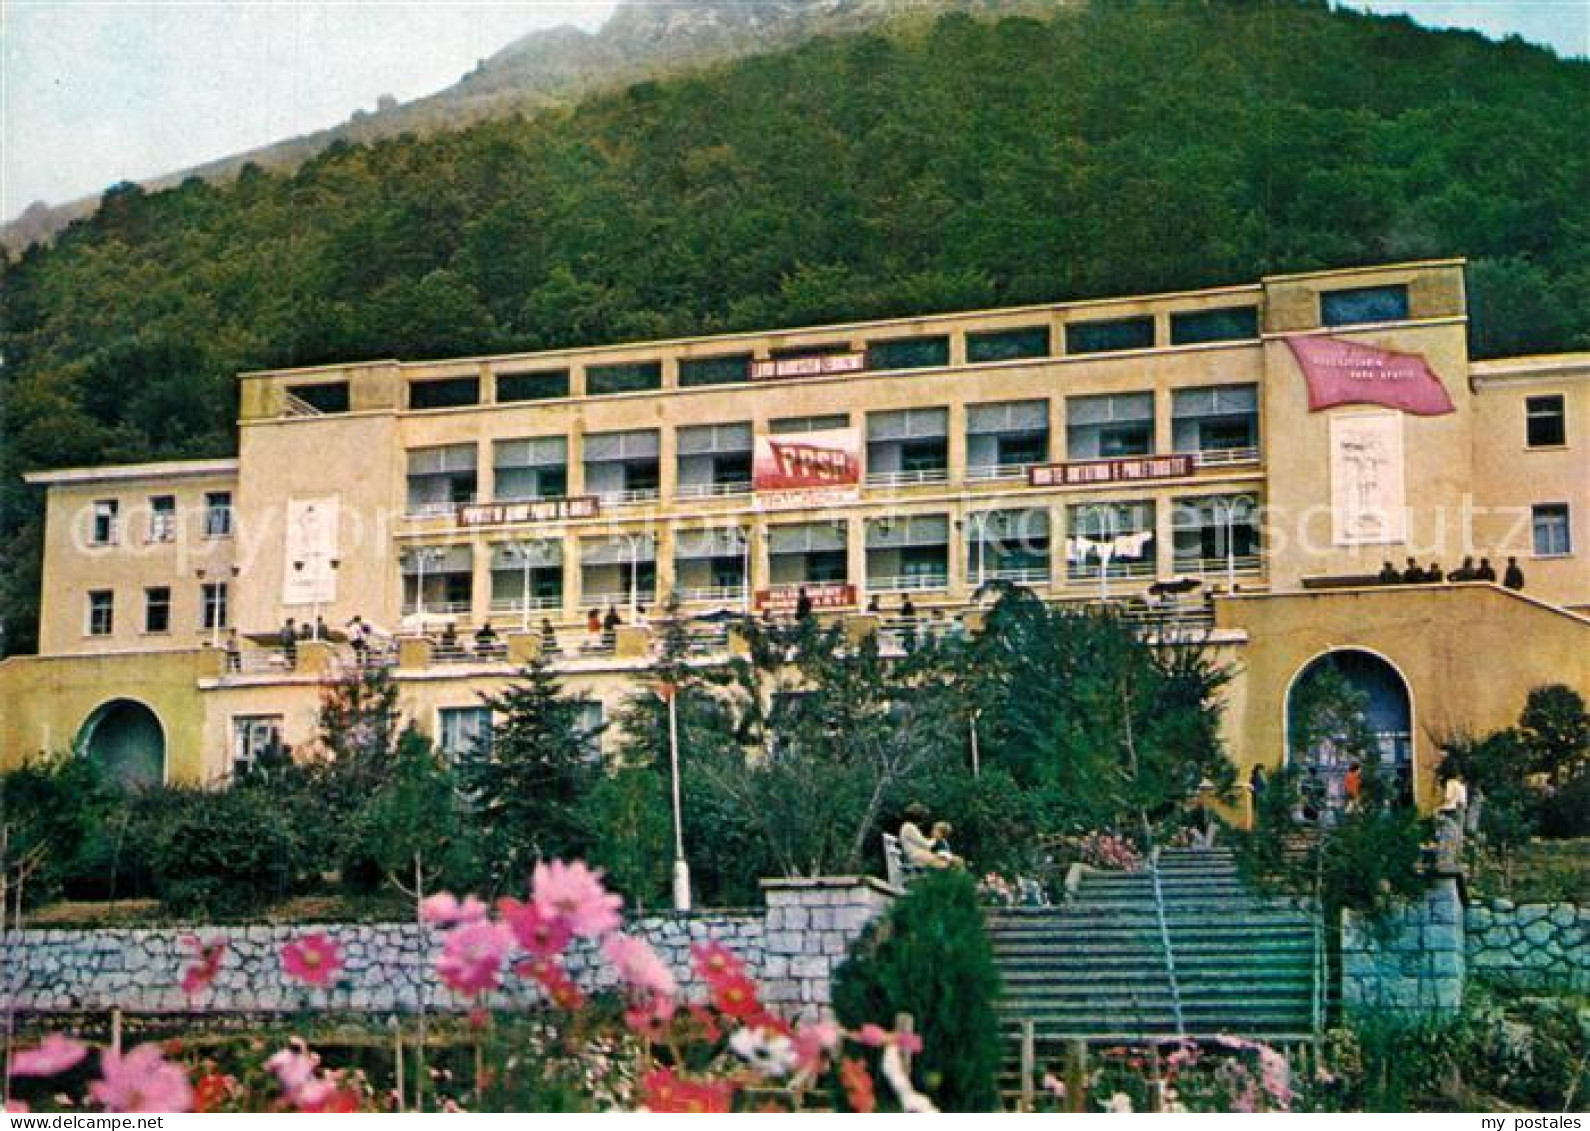 73599684 Dajt Shtepia E Pushimit Ferienhaus Hotel  - Albania